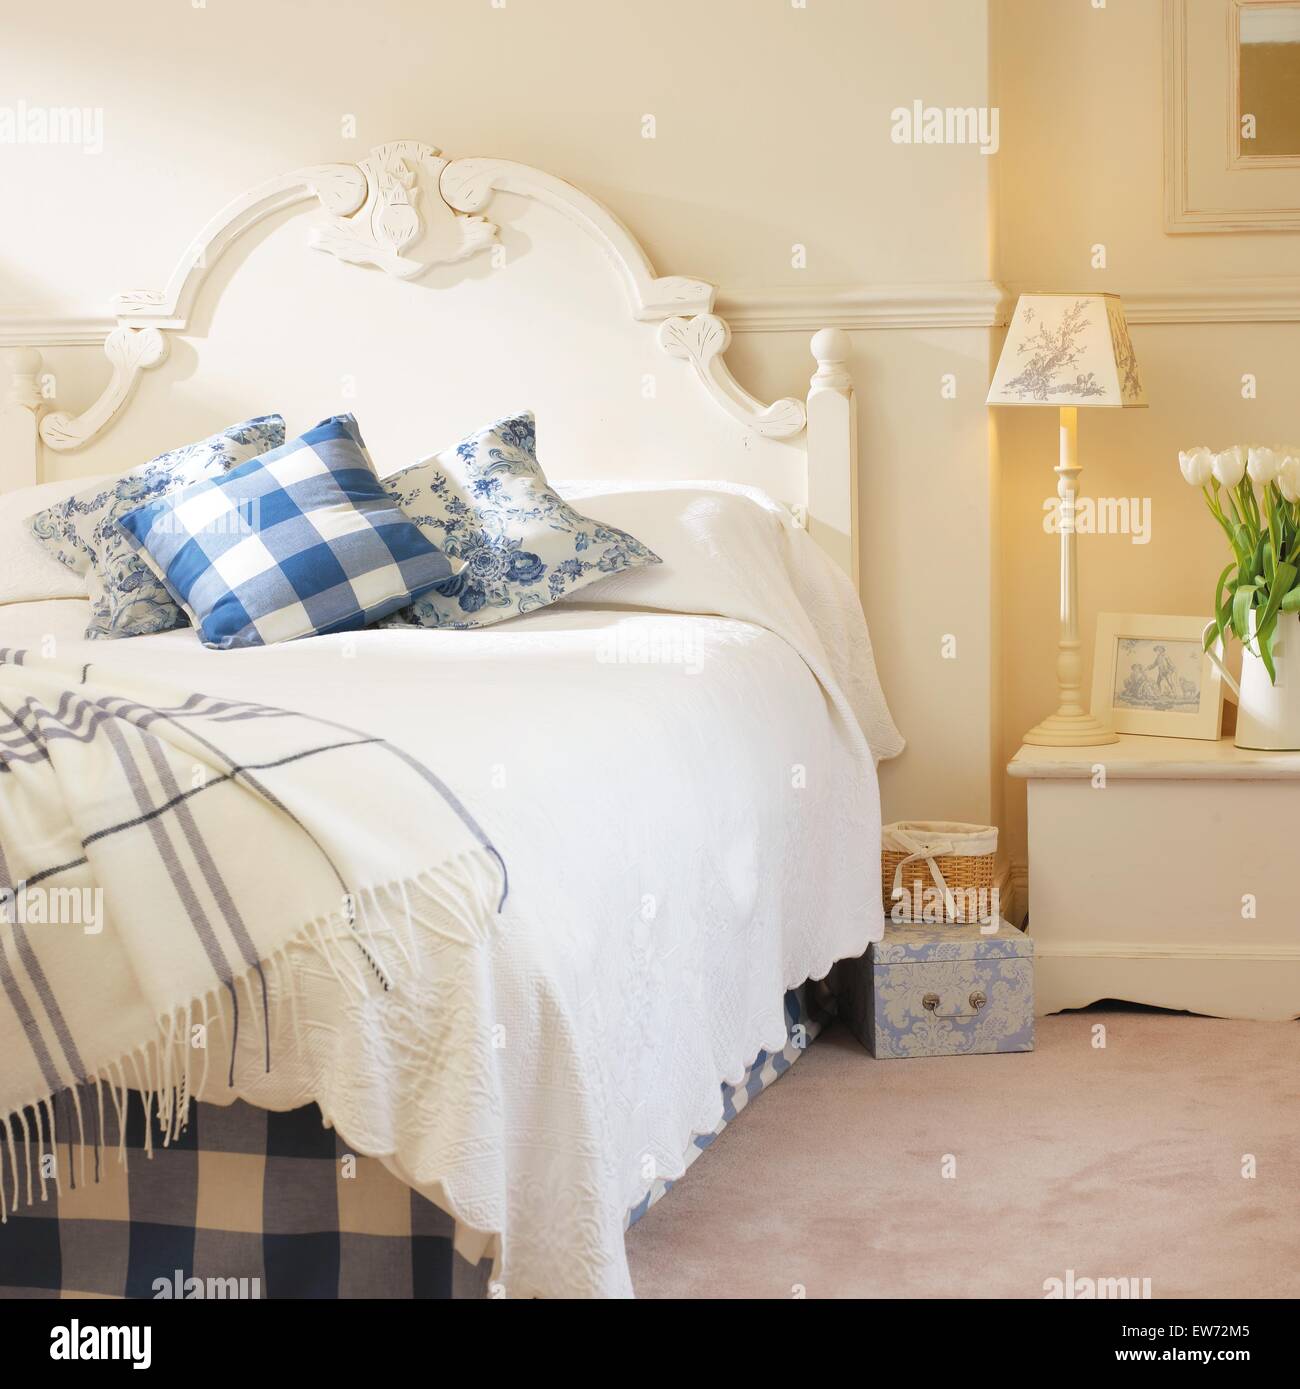 Blue+bianco a scacchi buttare e cuscini sul dipinto di bianco letto con trapunta bianca in camera da letto bianca con la lampada accesa sul comodino Foto Stock